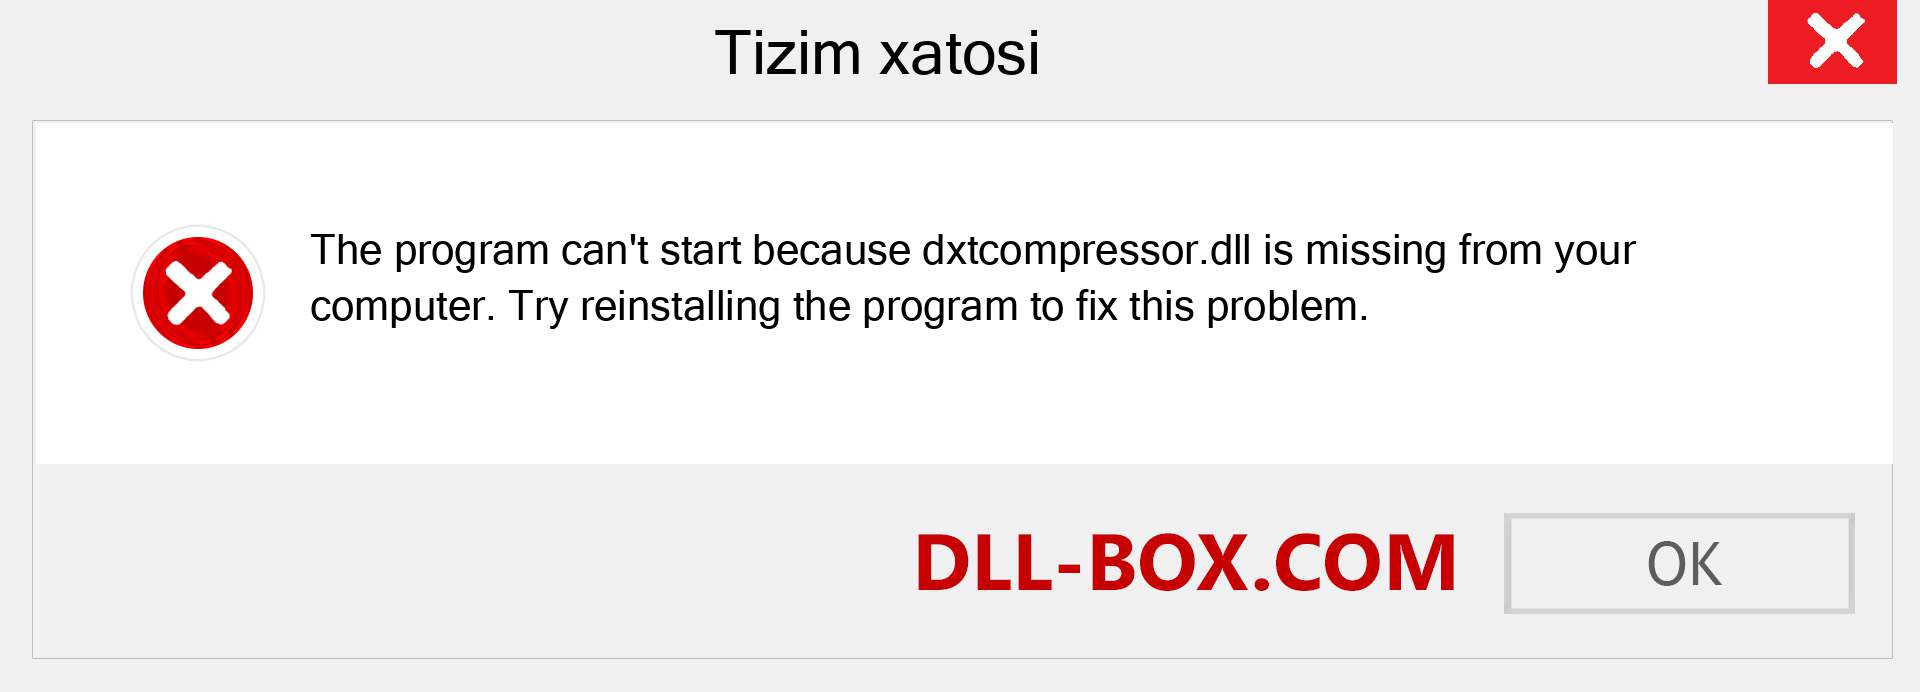 dxtcompressor.dll fayli yo'qolganmi?. Windows 7, 8, 10 uchun yuklab olish - Windowsda dxtcompressor dll etishmayotgan xatoni tuzating, rasmlar, rasmlar